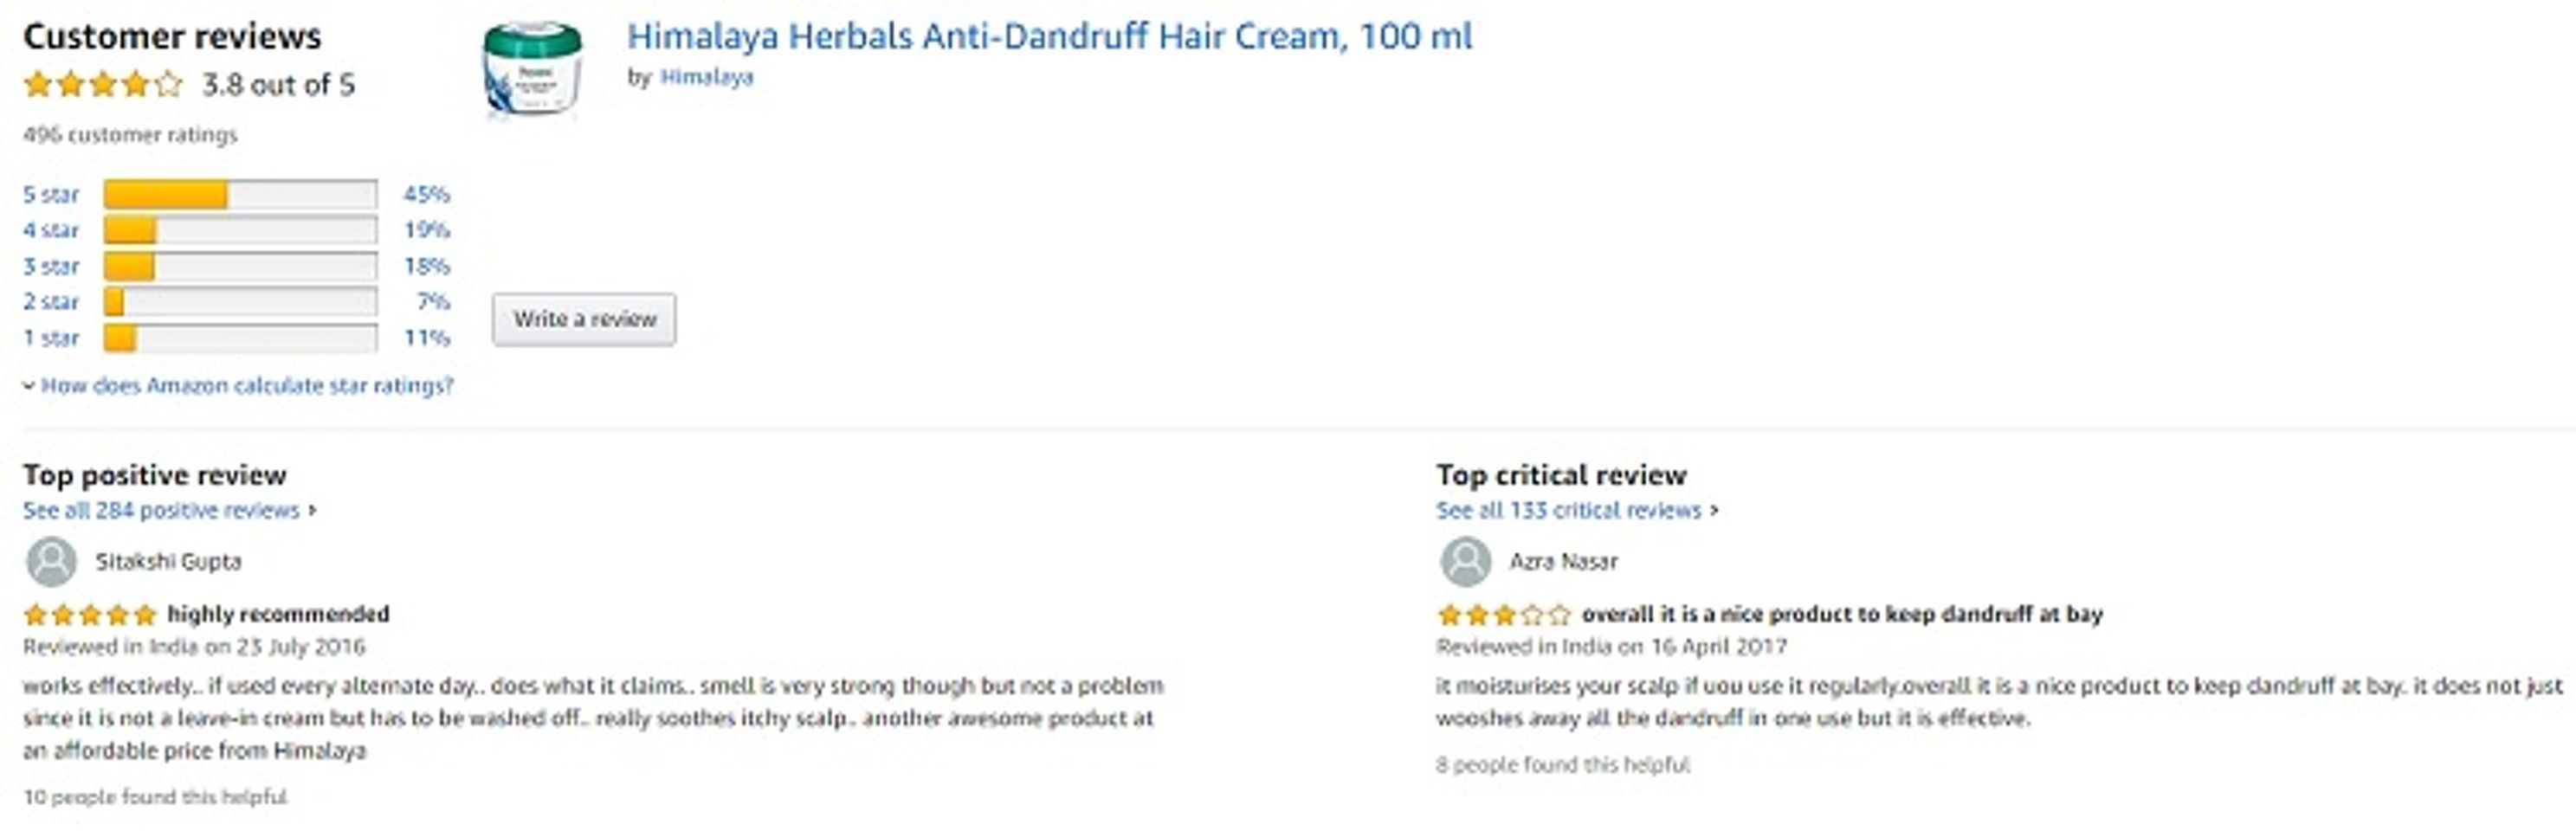 Phản hồi từ phía khách hàng sử dụng kem ủ Anti-dandruff Hair Cream Himalaya 2